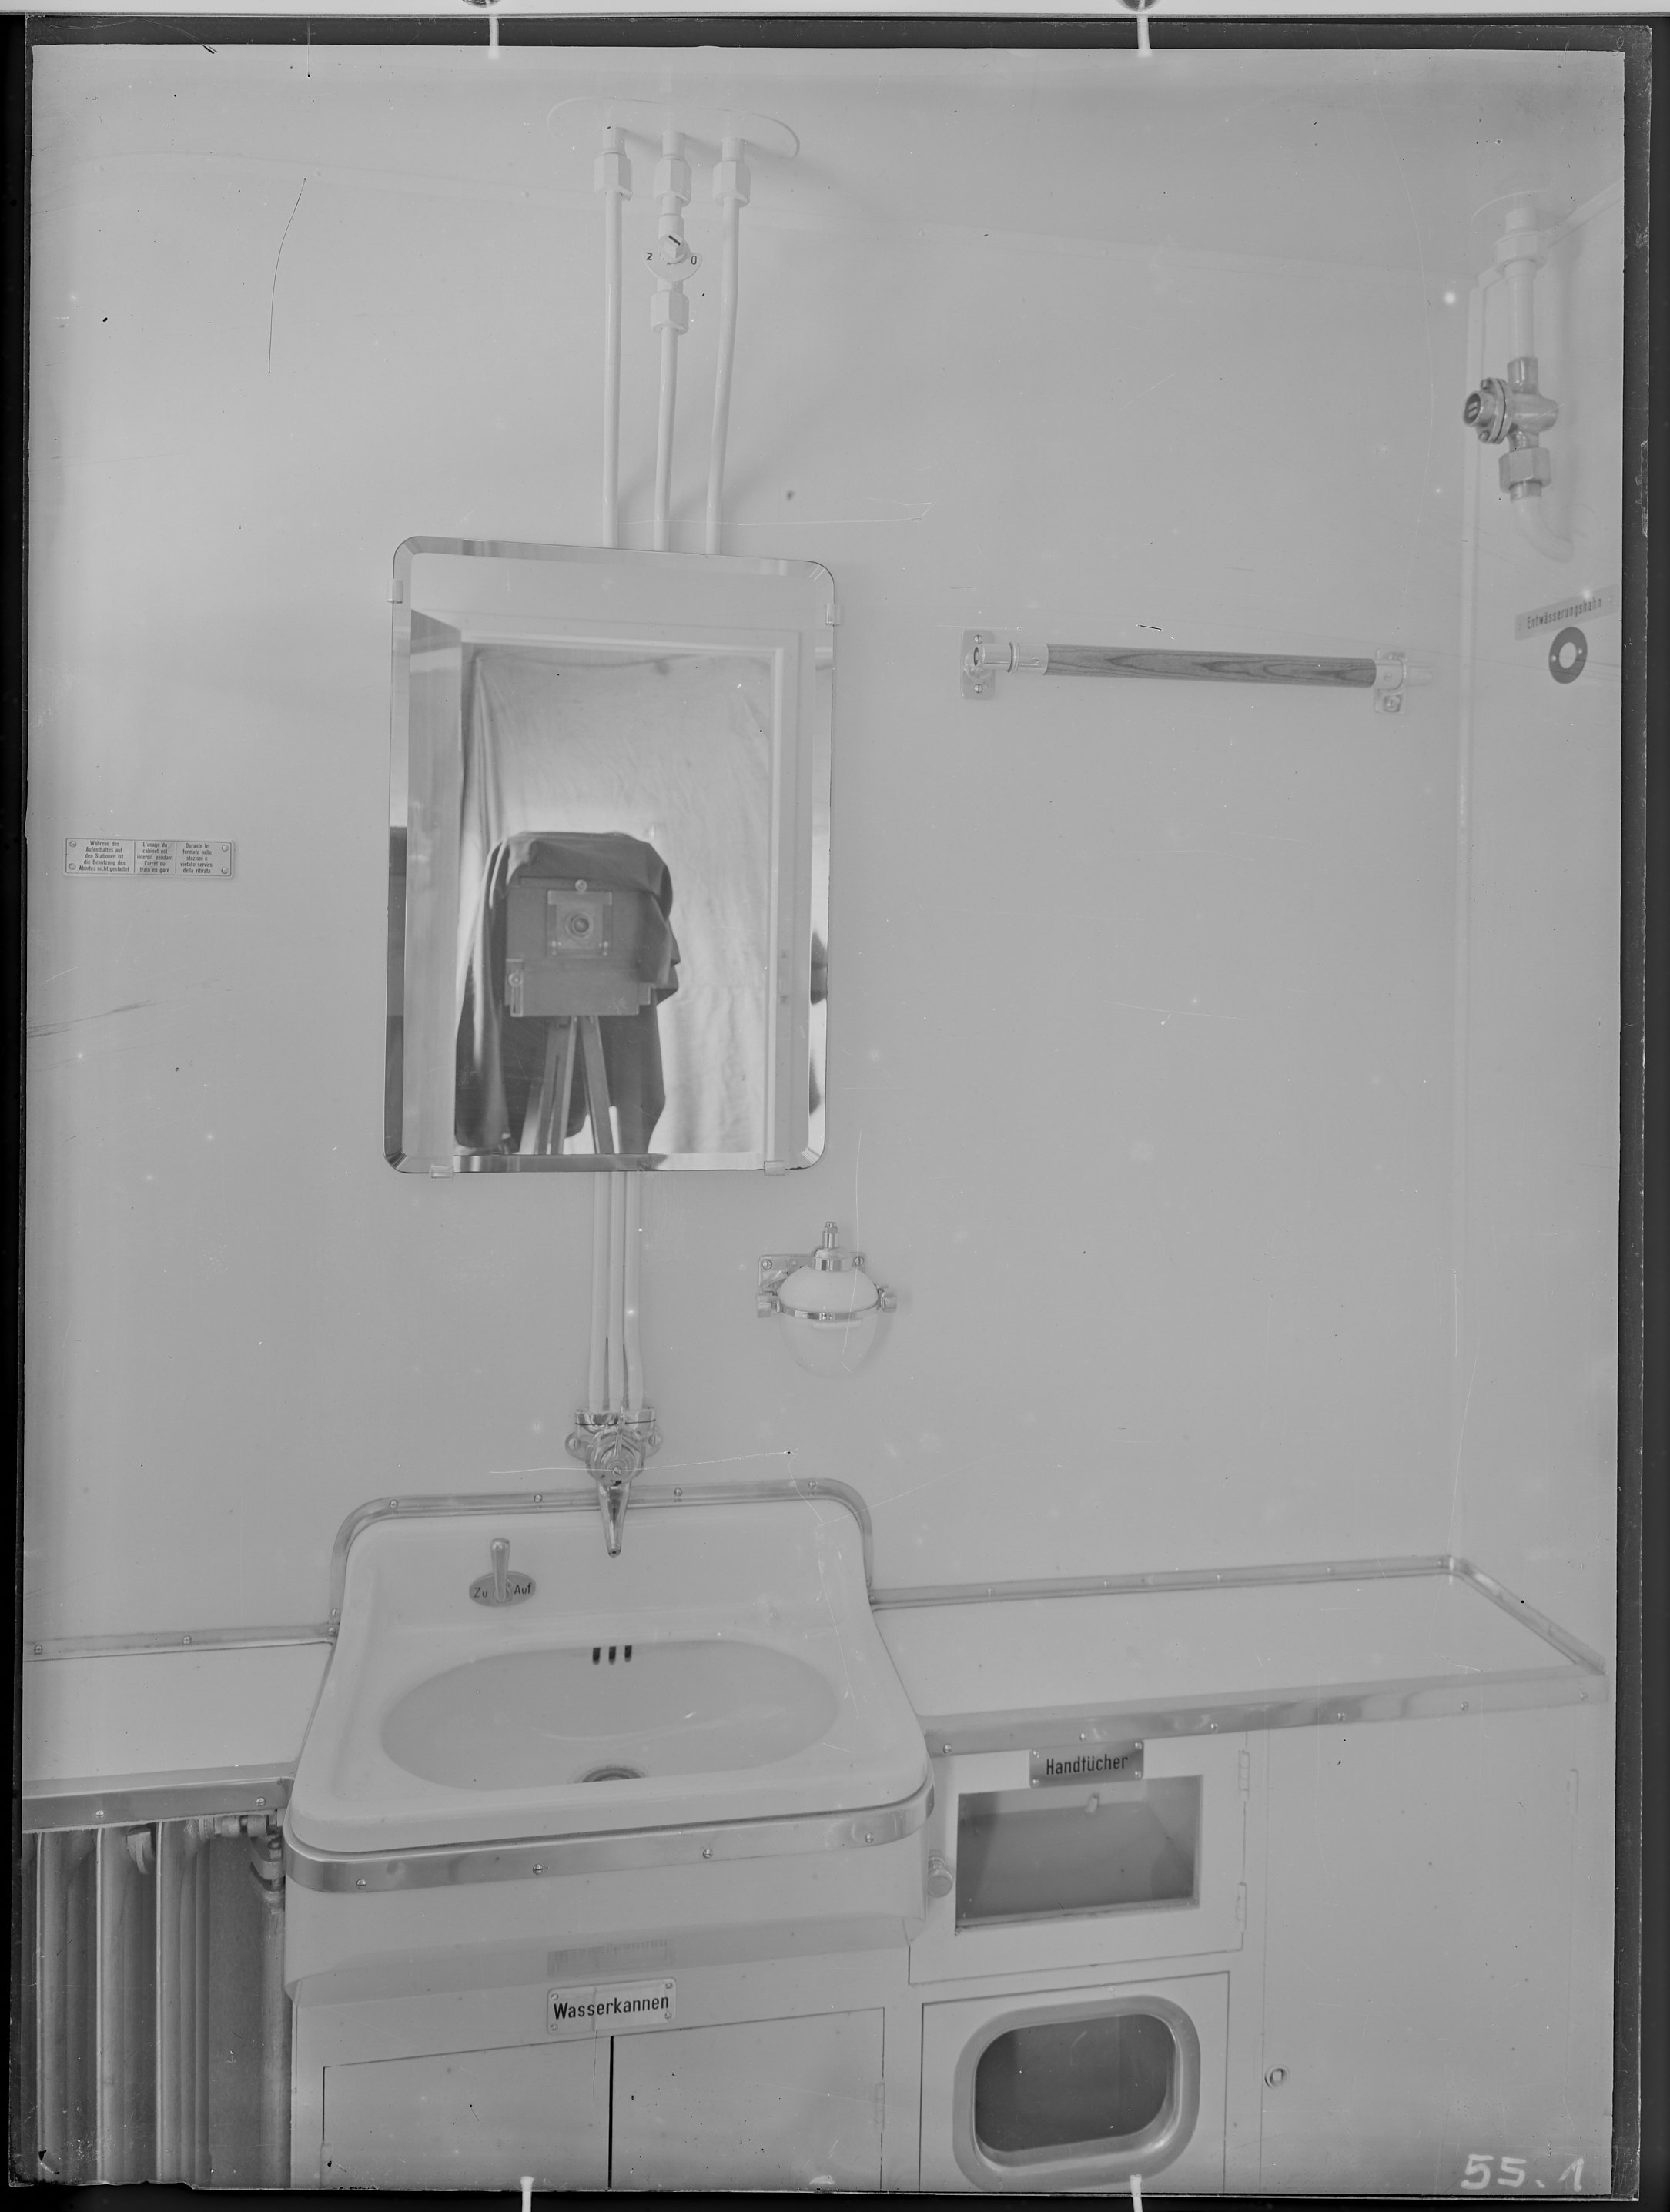 Fotografie: D-Zugwagen (Innenansicht), Toilettenraum mit Spiegelbild der Foto-Kamera auf Stativ, um 1941? (Schenkung der Bombardier Transportation, Werk Görlitz | Eigentum/Sammlung der Verkehrsmuseums Dresden gGmbH CC BY-NC-SA)